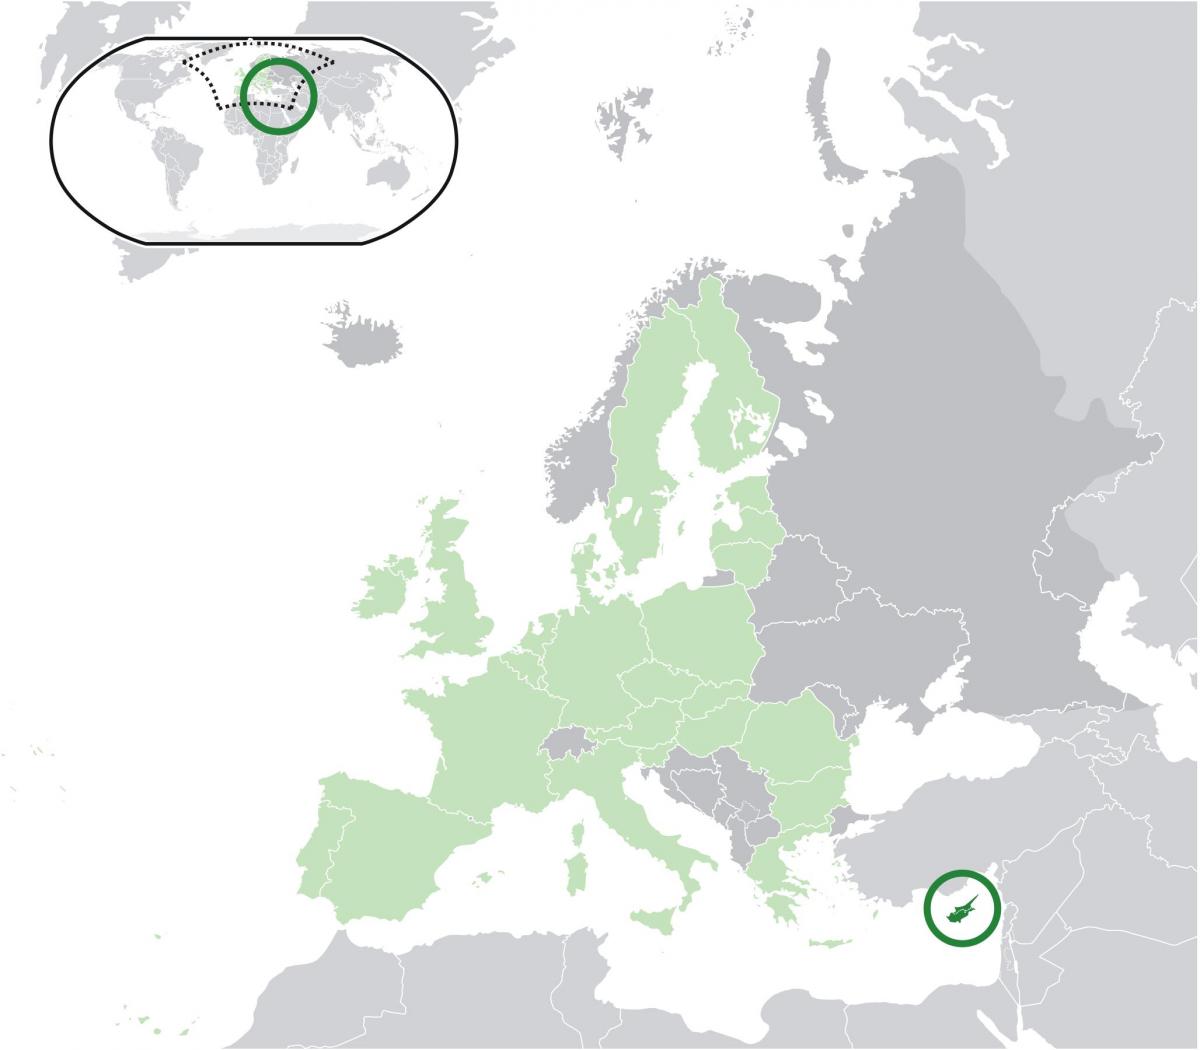 mapa da europa mostrando Chipre